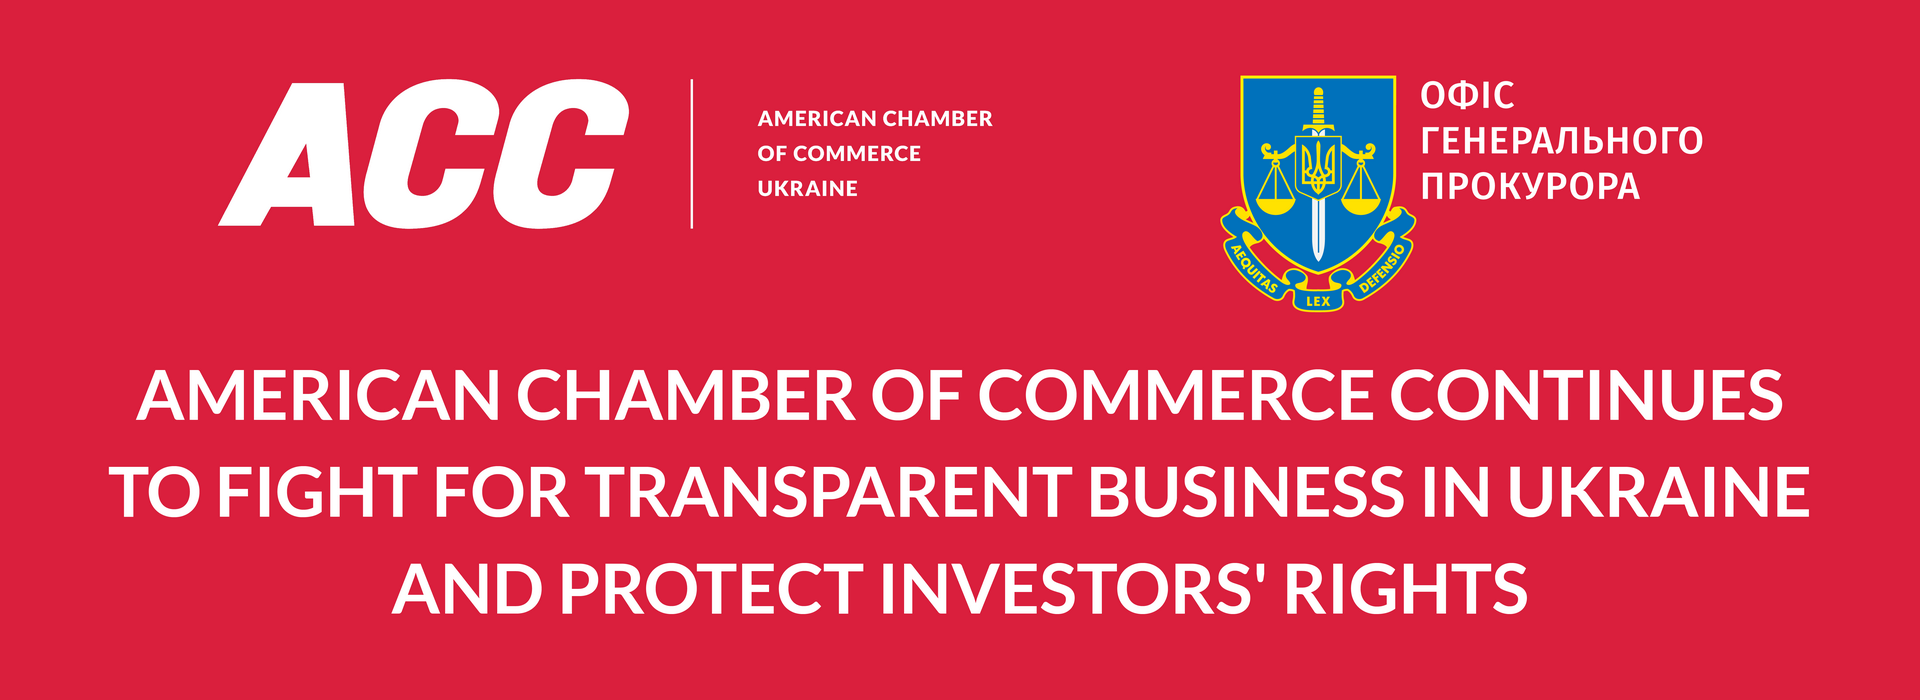 Американська торговельна палата продовжує боротися за прозорий бізнес в Україні та захищати права інвесторів